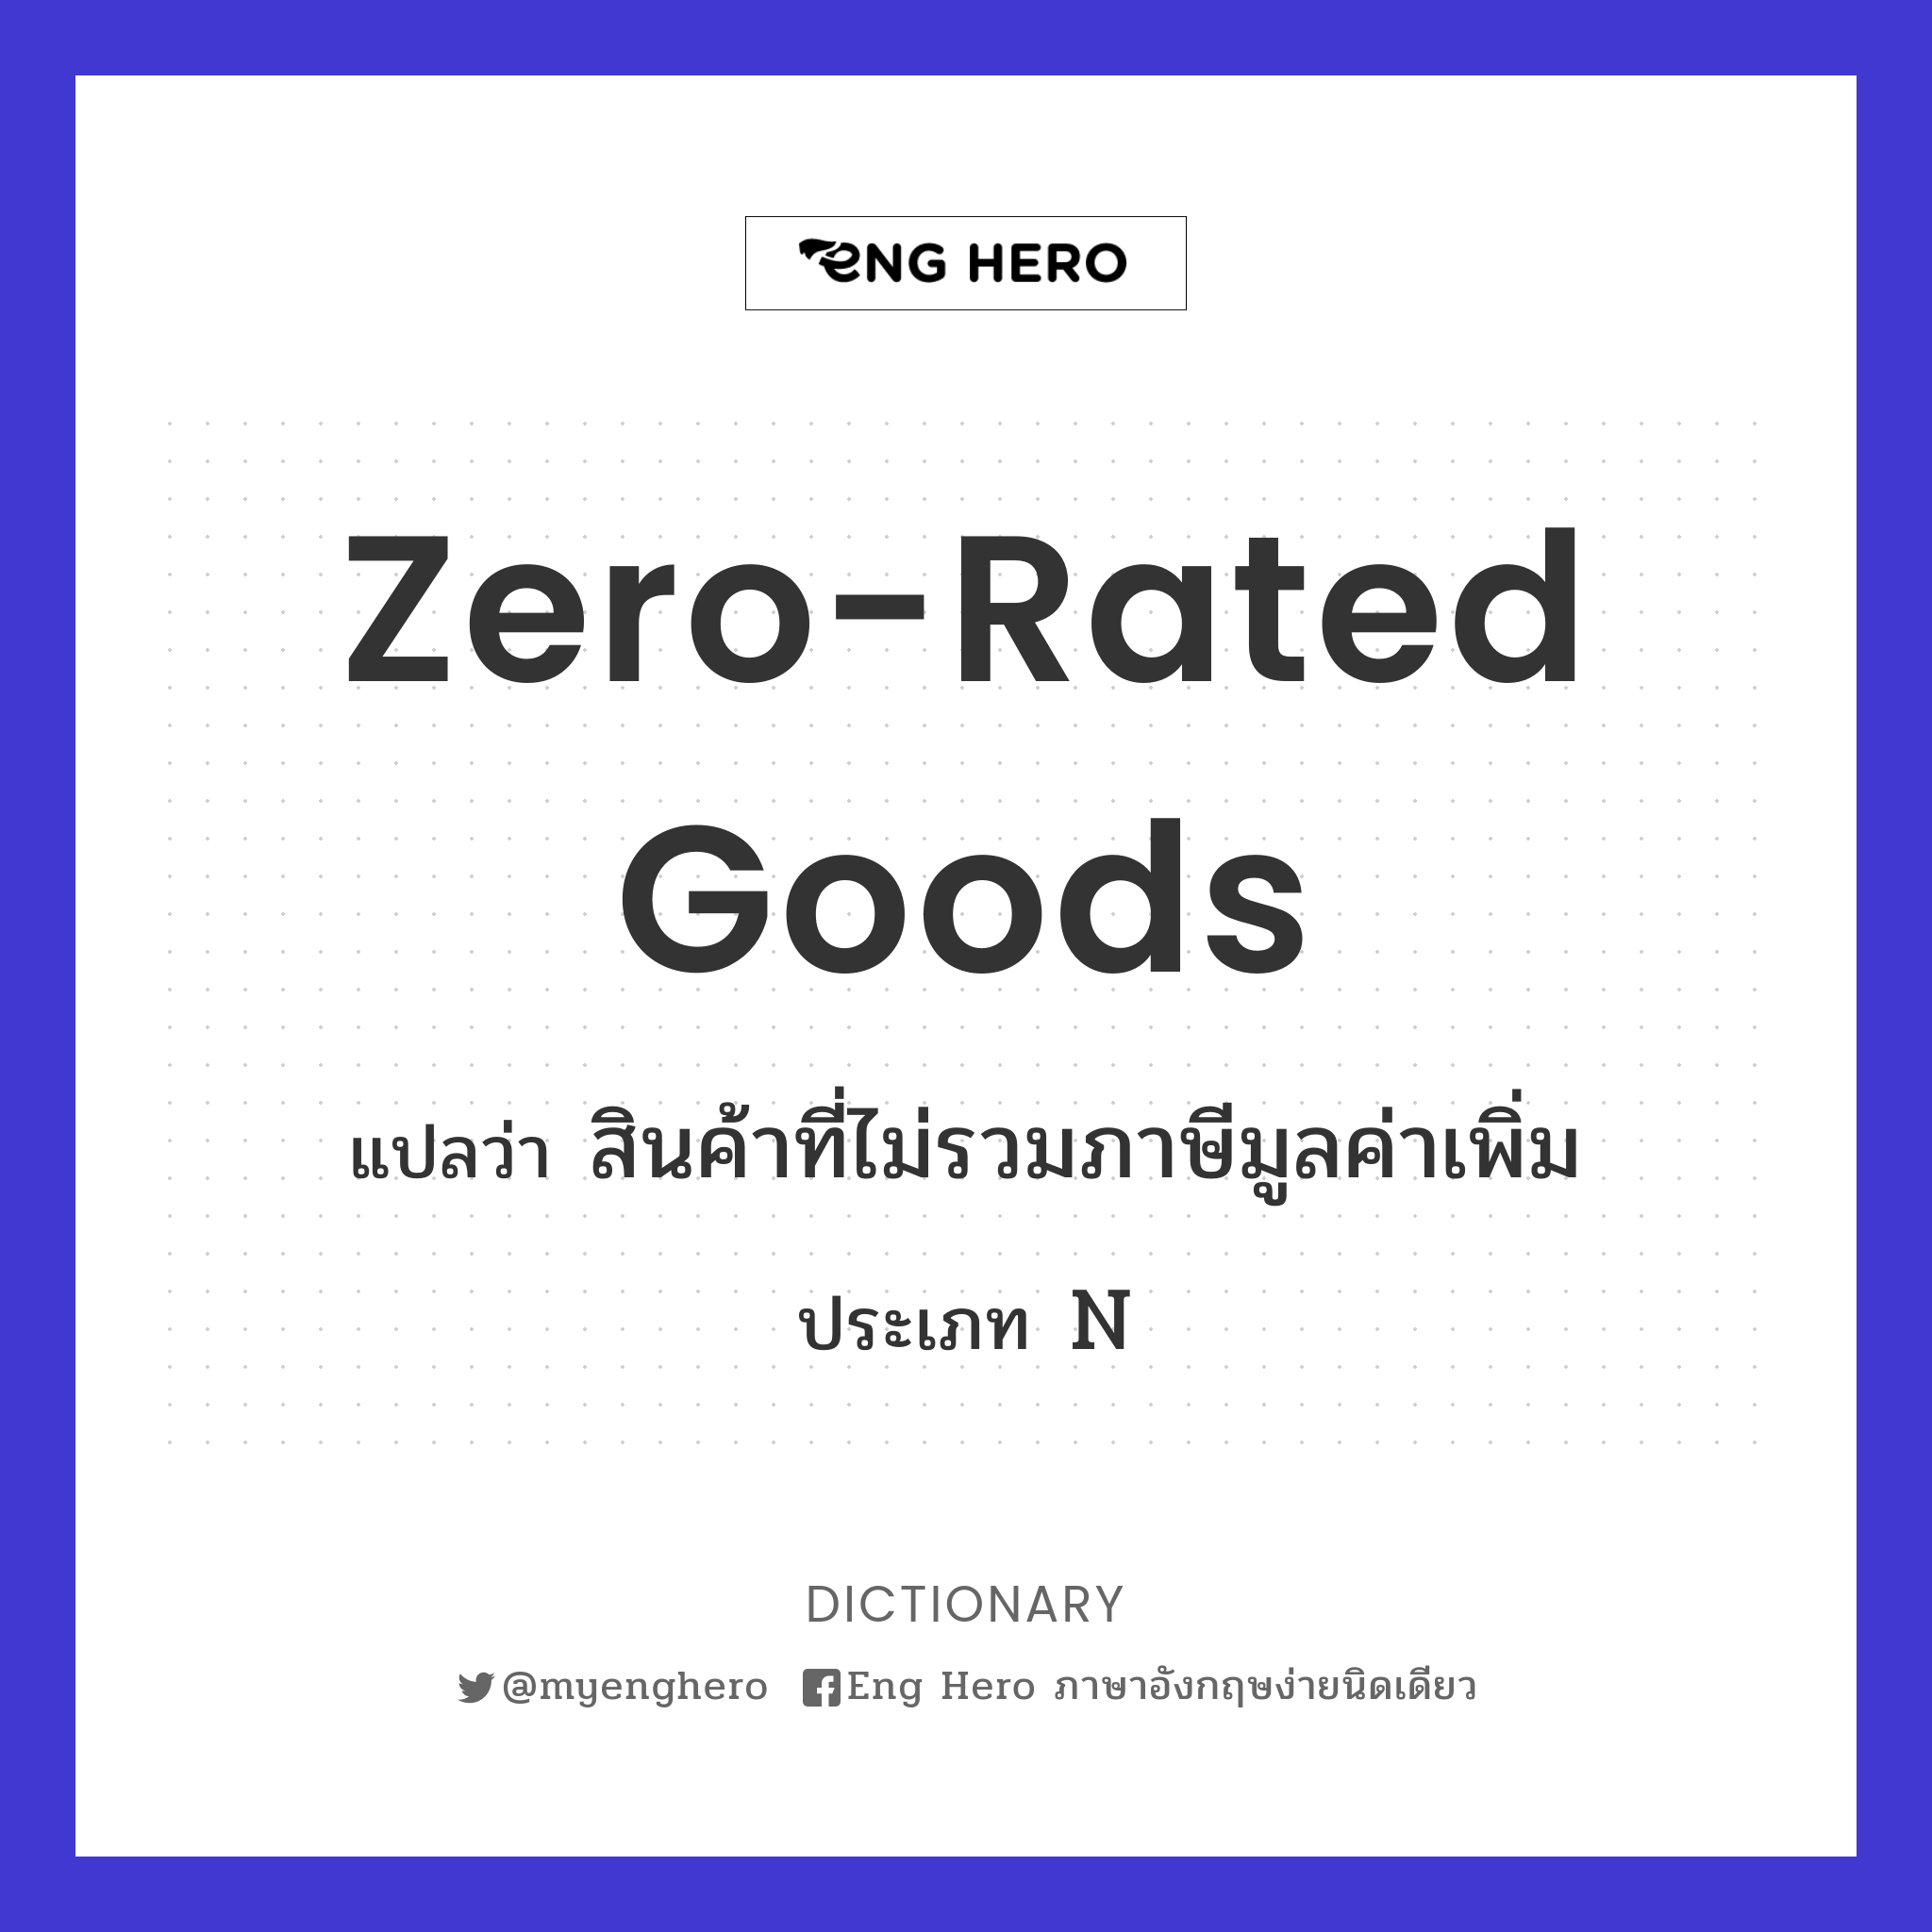 Zero-rated goods